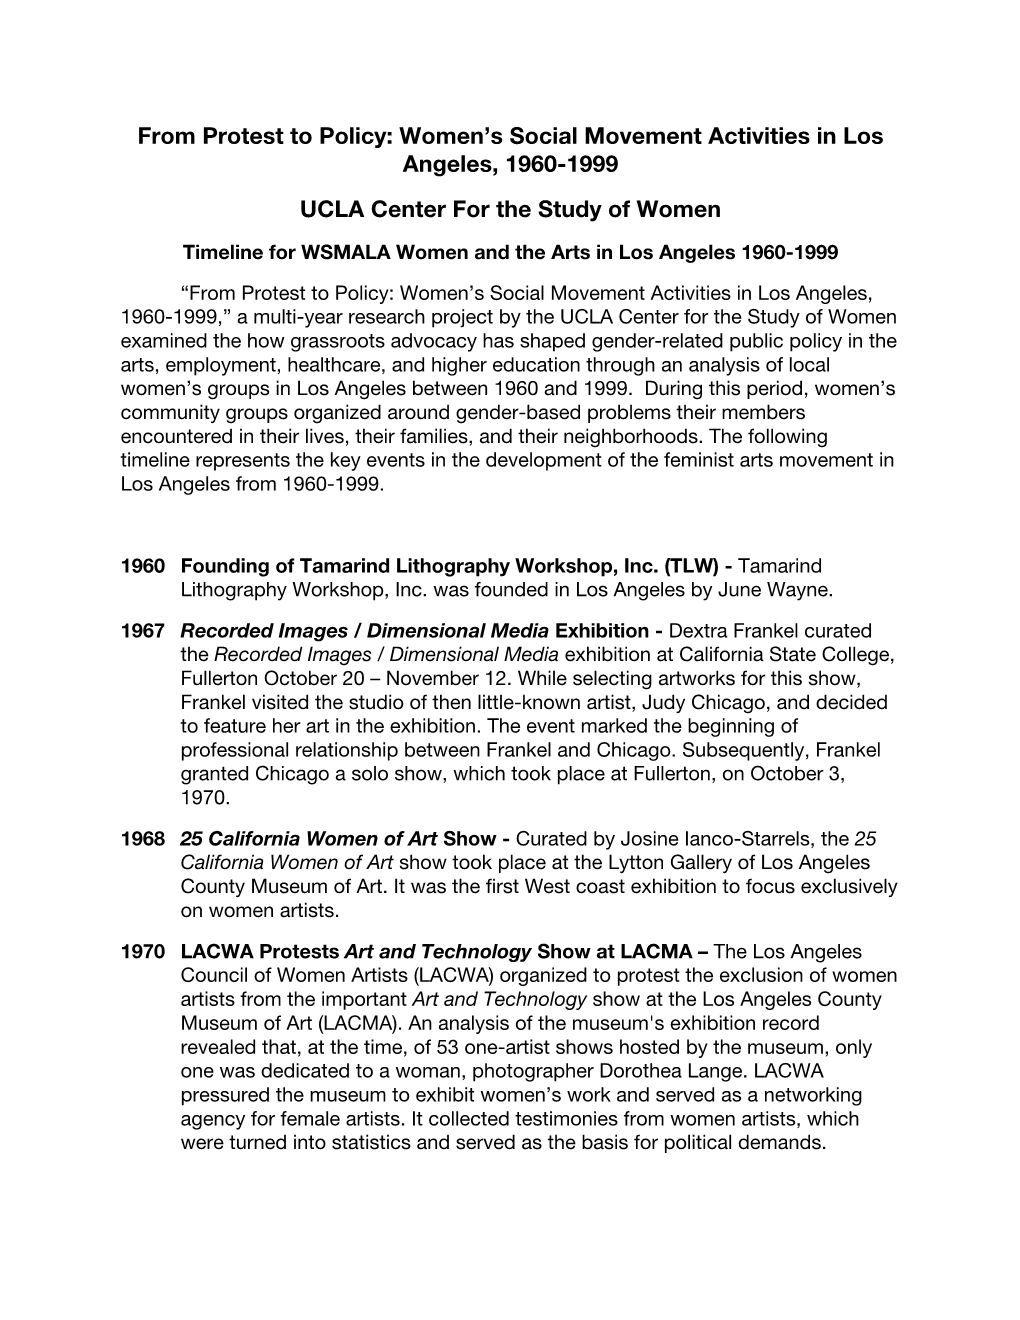 Women's Social Movement Activities in Los Angeles